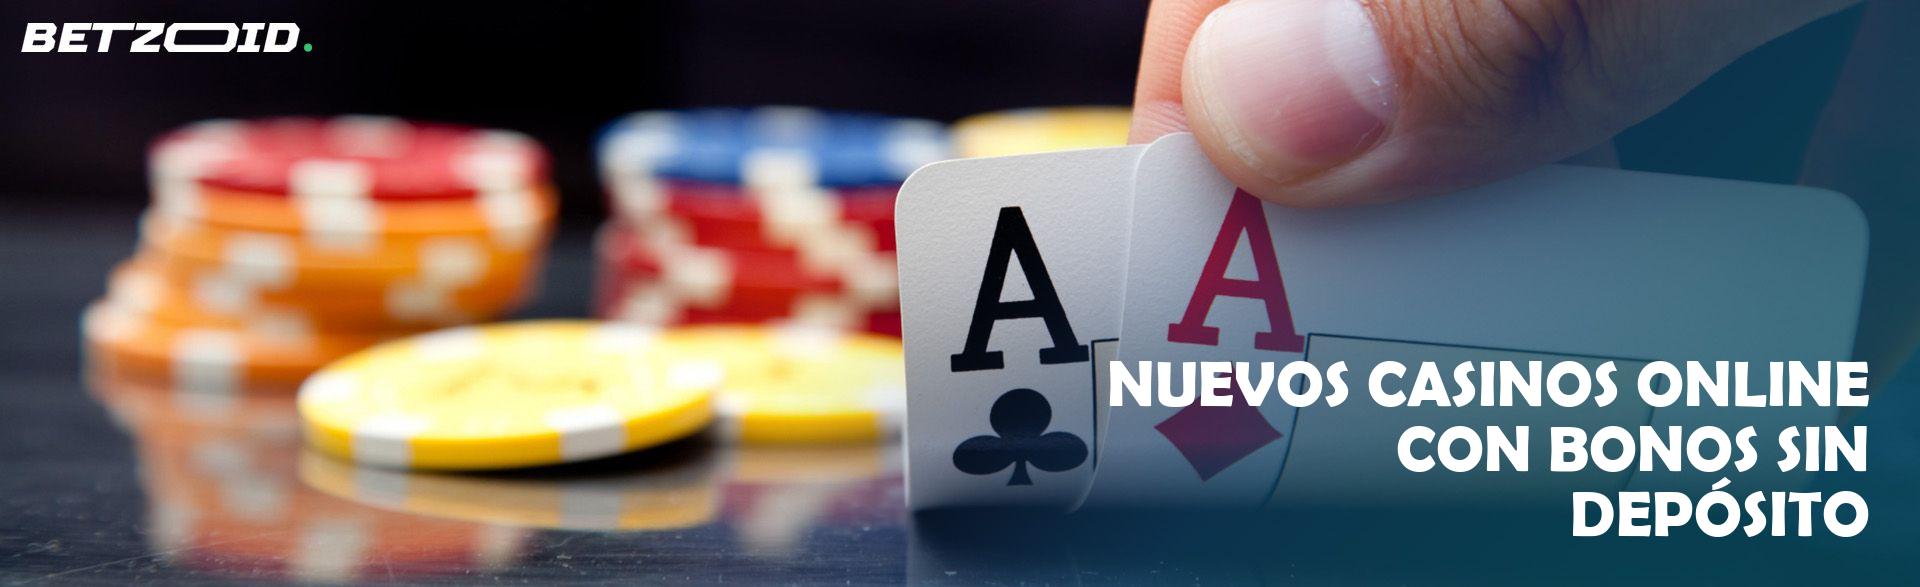 Nuevos Casinos Online con Bonos sin Depósito.